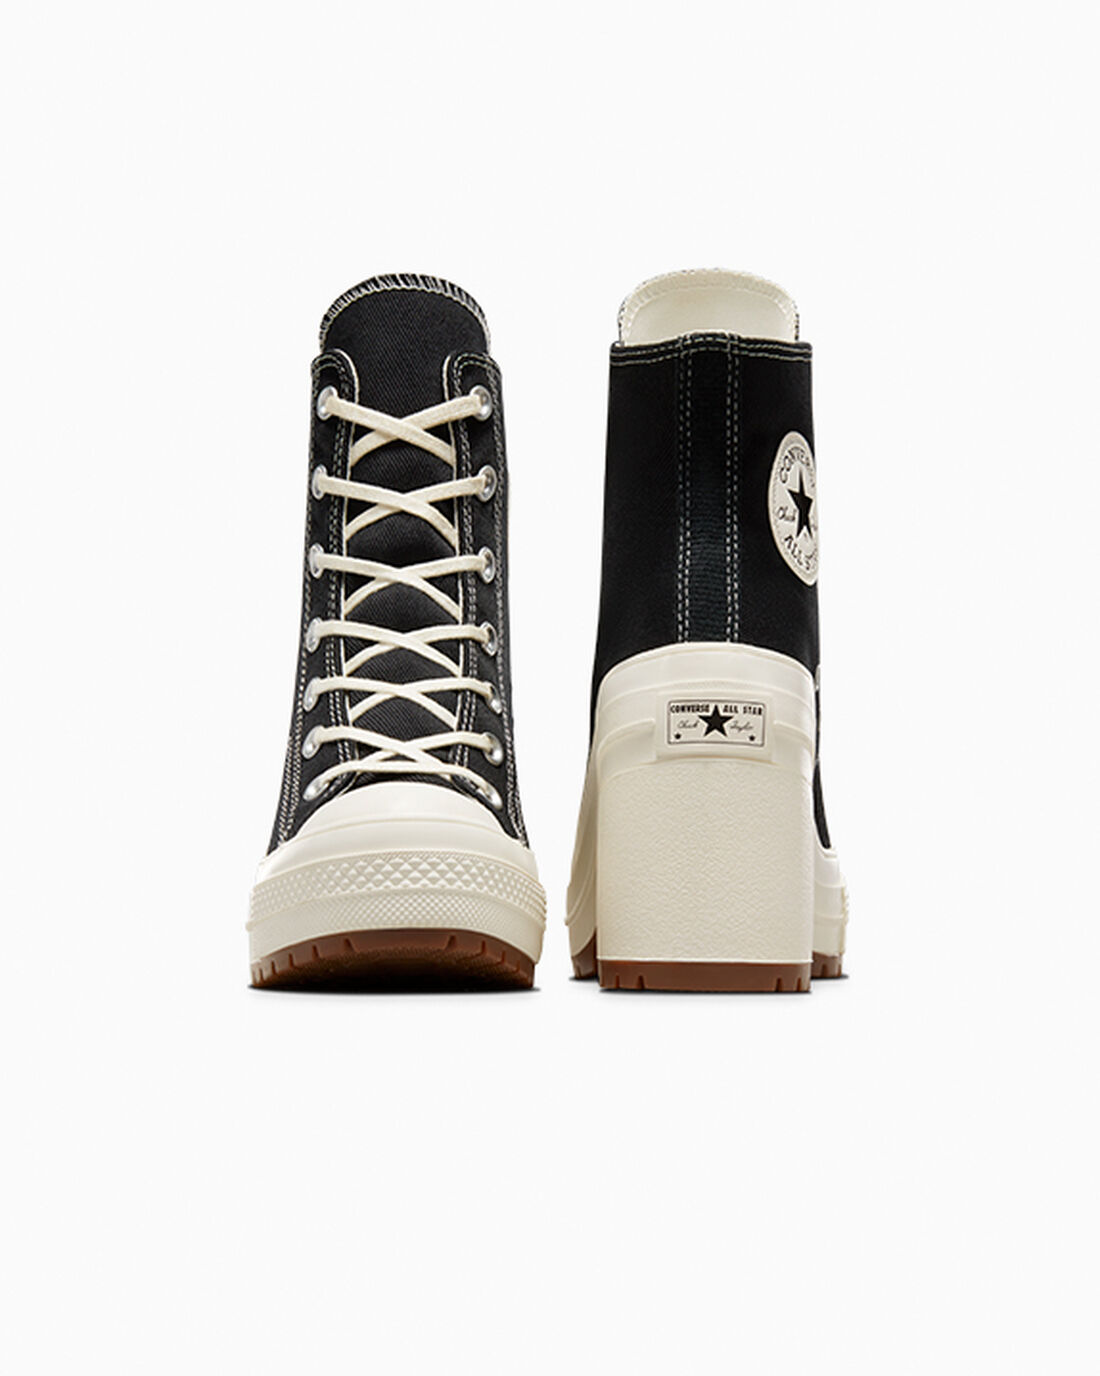 Women's Converse Chuck 70 De Luxe Heel High Top Sneakers Black | Australia-03745